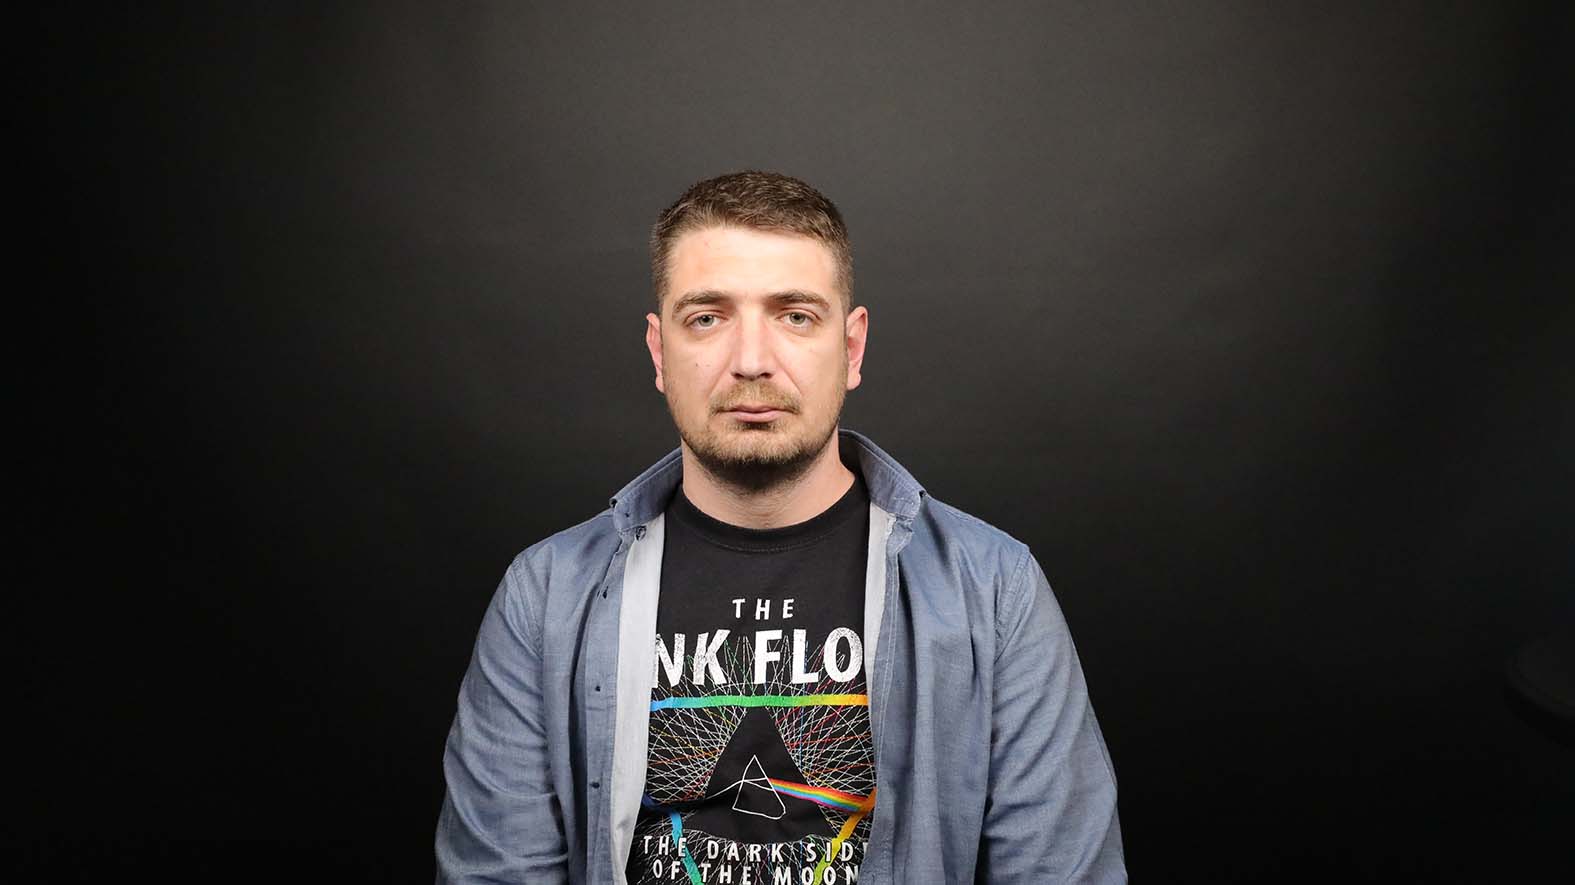 Kap pravde u moru nepravde: Šta je sporno u reakcijama na presudu u postupku za paljenje kuće novinara "Žig infa" Milana Jovanovića? 2